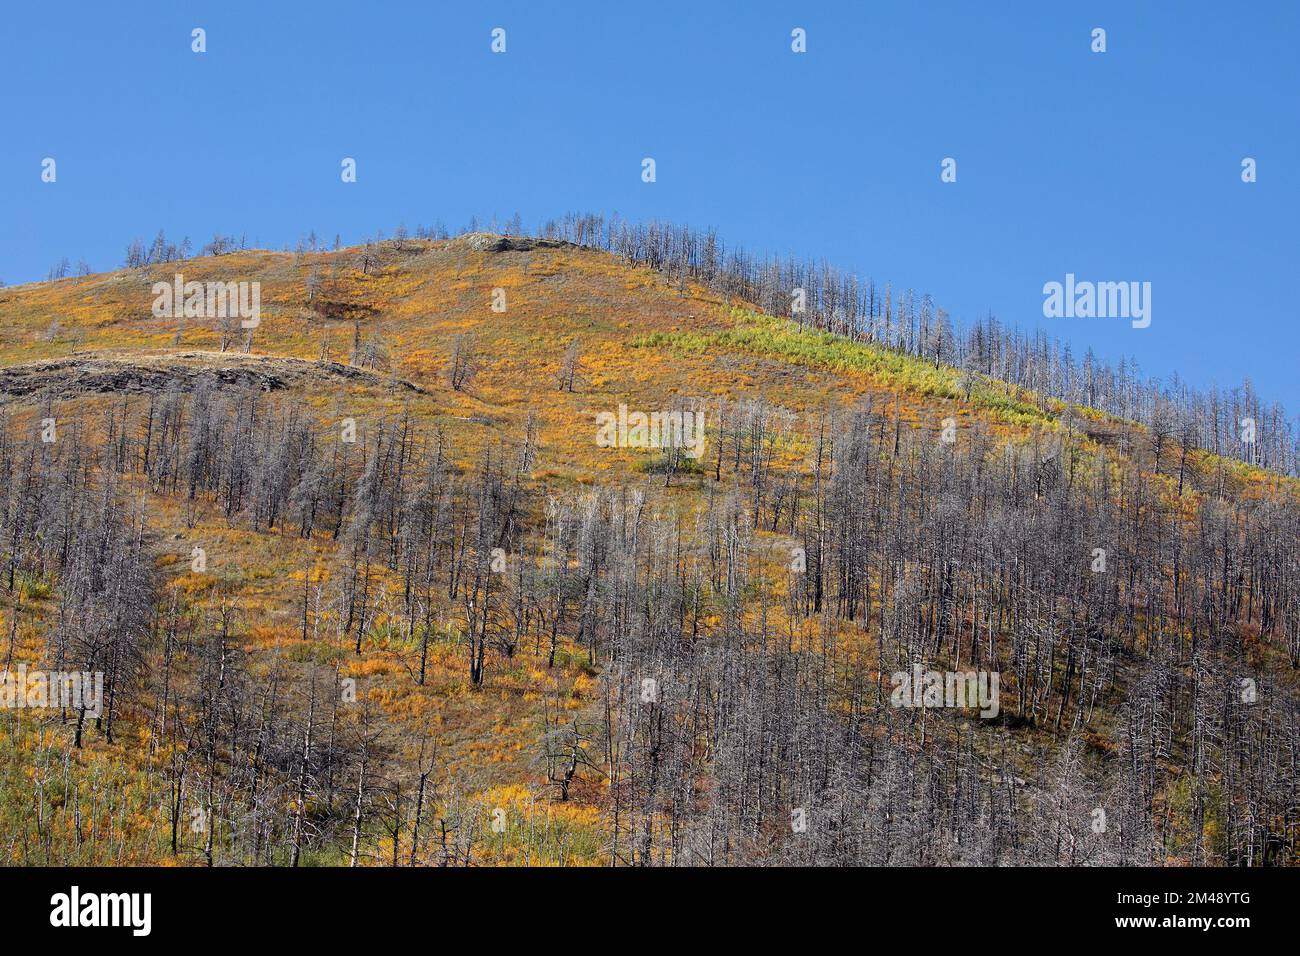 La végétation commence à réglater et à couvrir le sol parmi les arbres morts 5 ans après que la forêt a été brûlée dans le feu de forêt de Kenow, Alberta, Canada. Banque D'Images